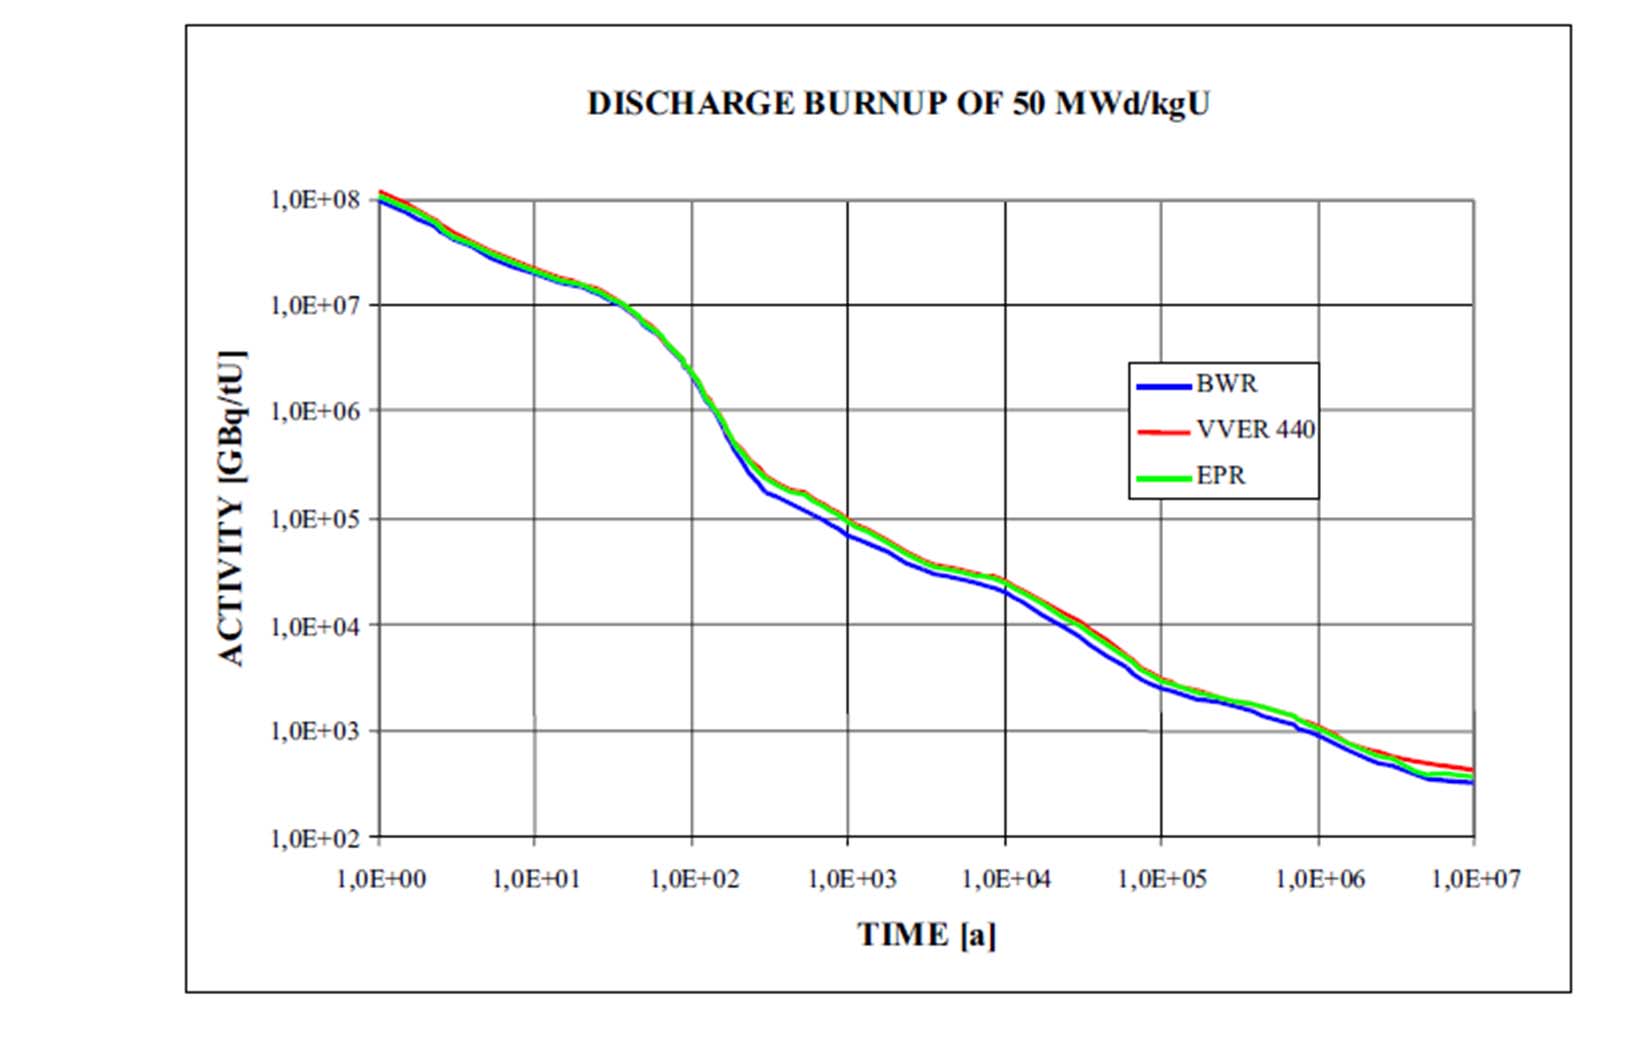 Pokles radioaktivity v průběhu času v závislosti na typu paliva BWR boiling water reactor